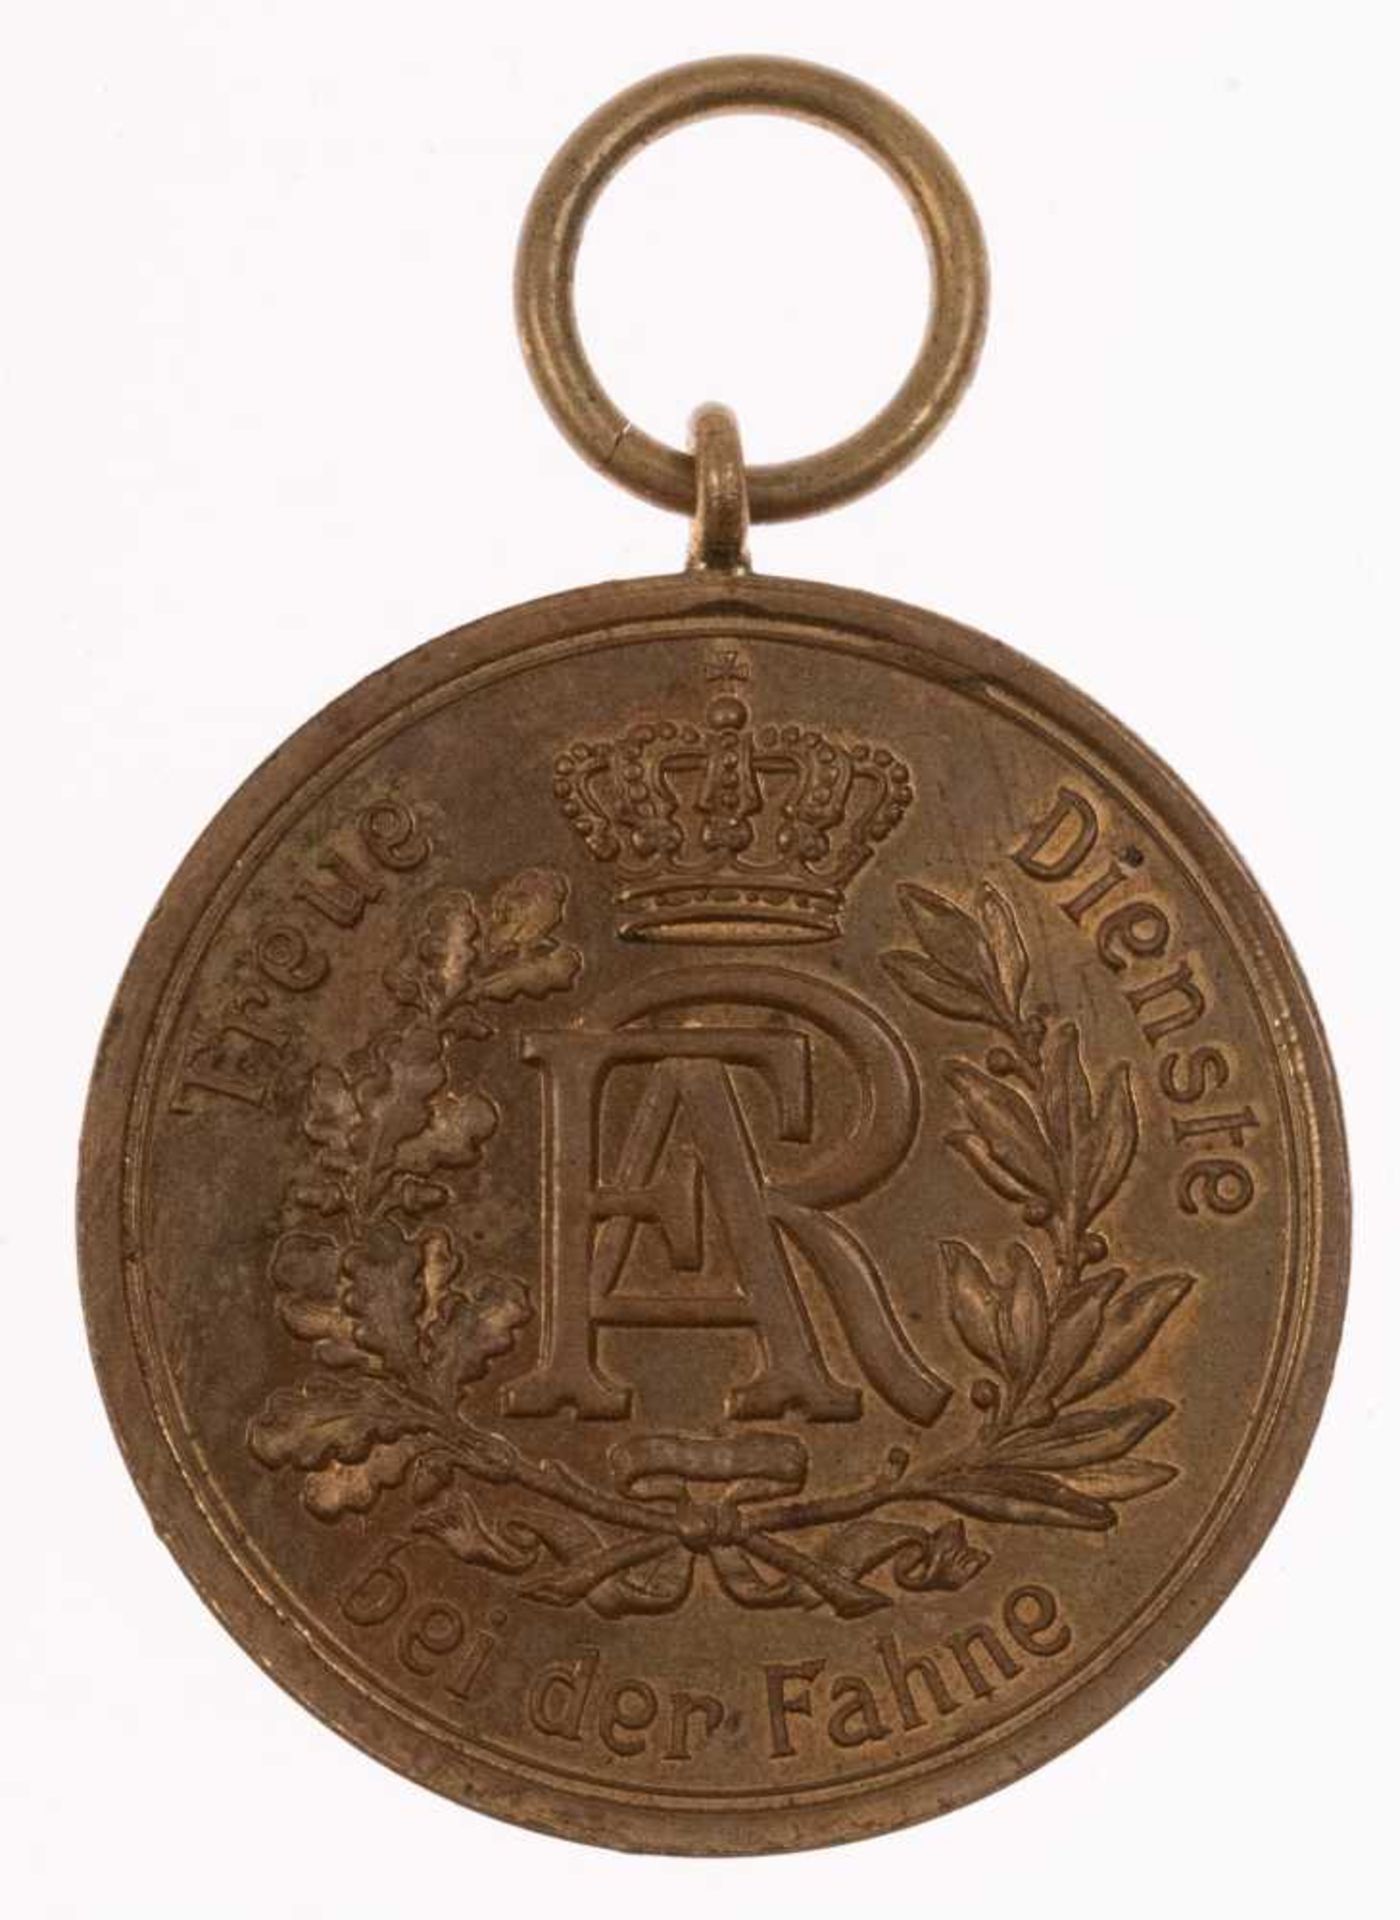 Sachsen, Dienstauszeichnung 2. Klasse für 12 Dienstjahre 1913, Kupfer bronziert, OEK 2314, Zustand 2